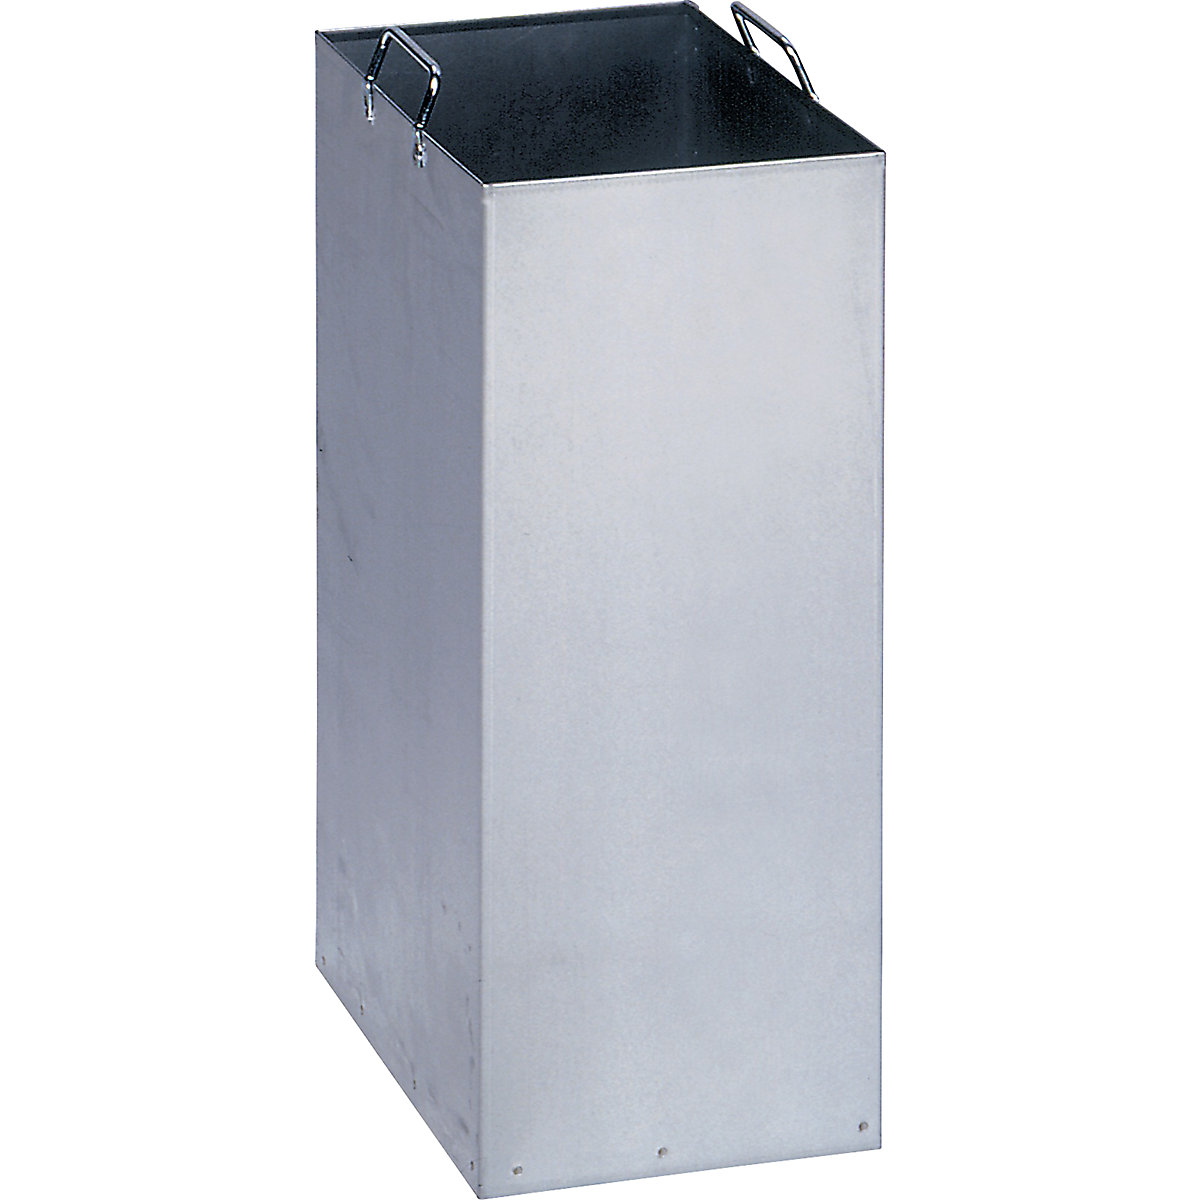 VAR Innenbehälter für Wertstoff-Trenn- und Sammelbehälter, aus verzinktem Stahlblech, für Inhalt 40 l